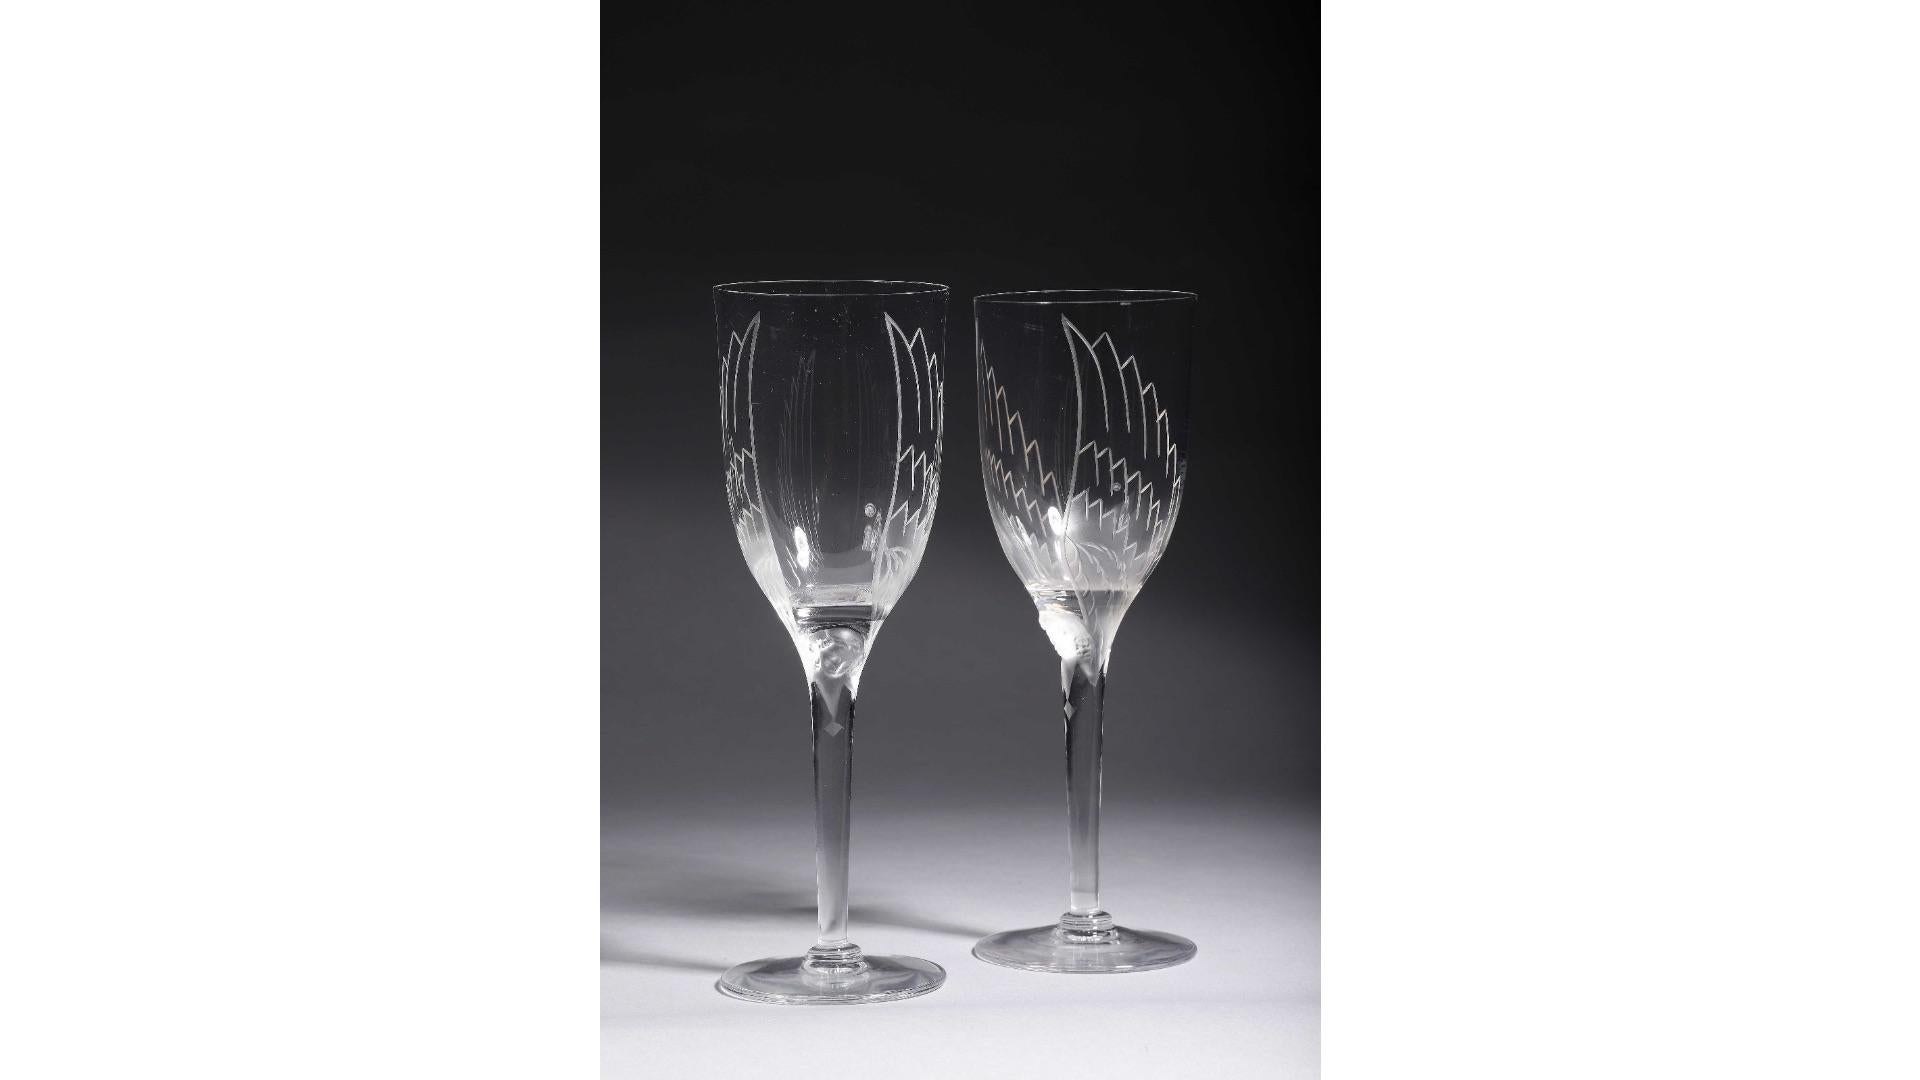 Marc Lalique (1900-1977) pour le cristal Lalique
Ensemble de 8 : verre en cristal soufflé à la main
son modèle a été créé en 1948 en hommage à Reims (champagne) et à l'ange qui orne sa cathédrale 
 